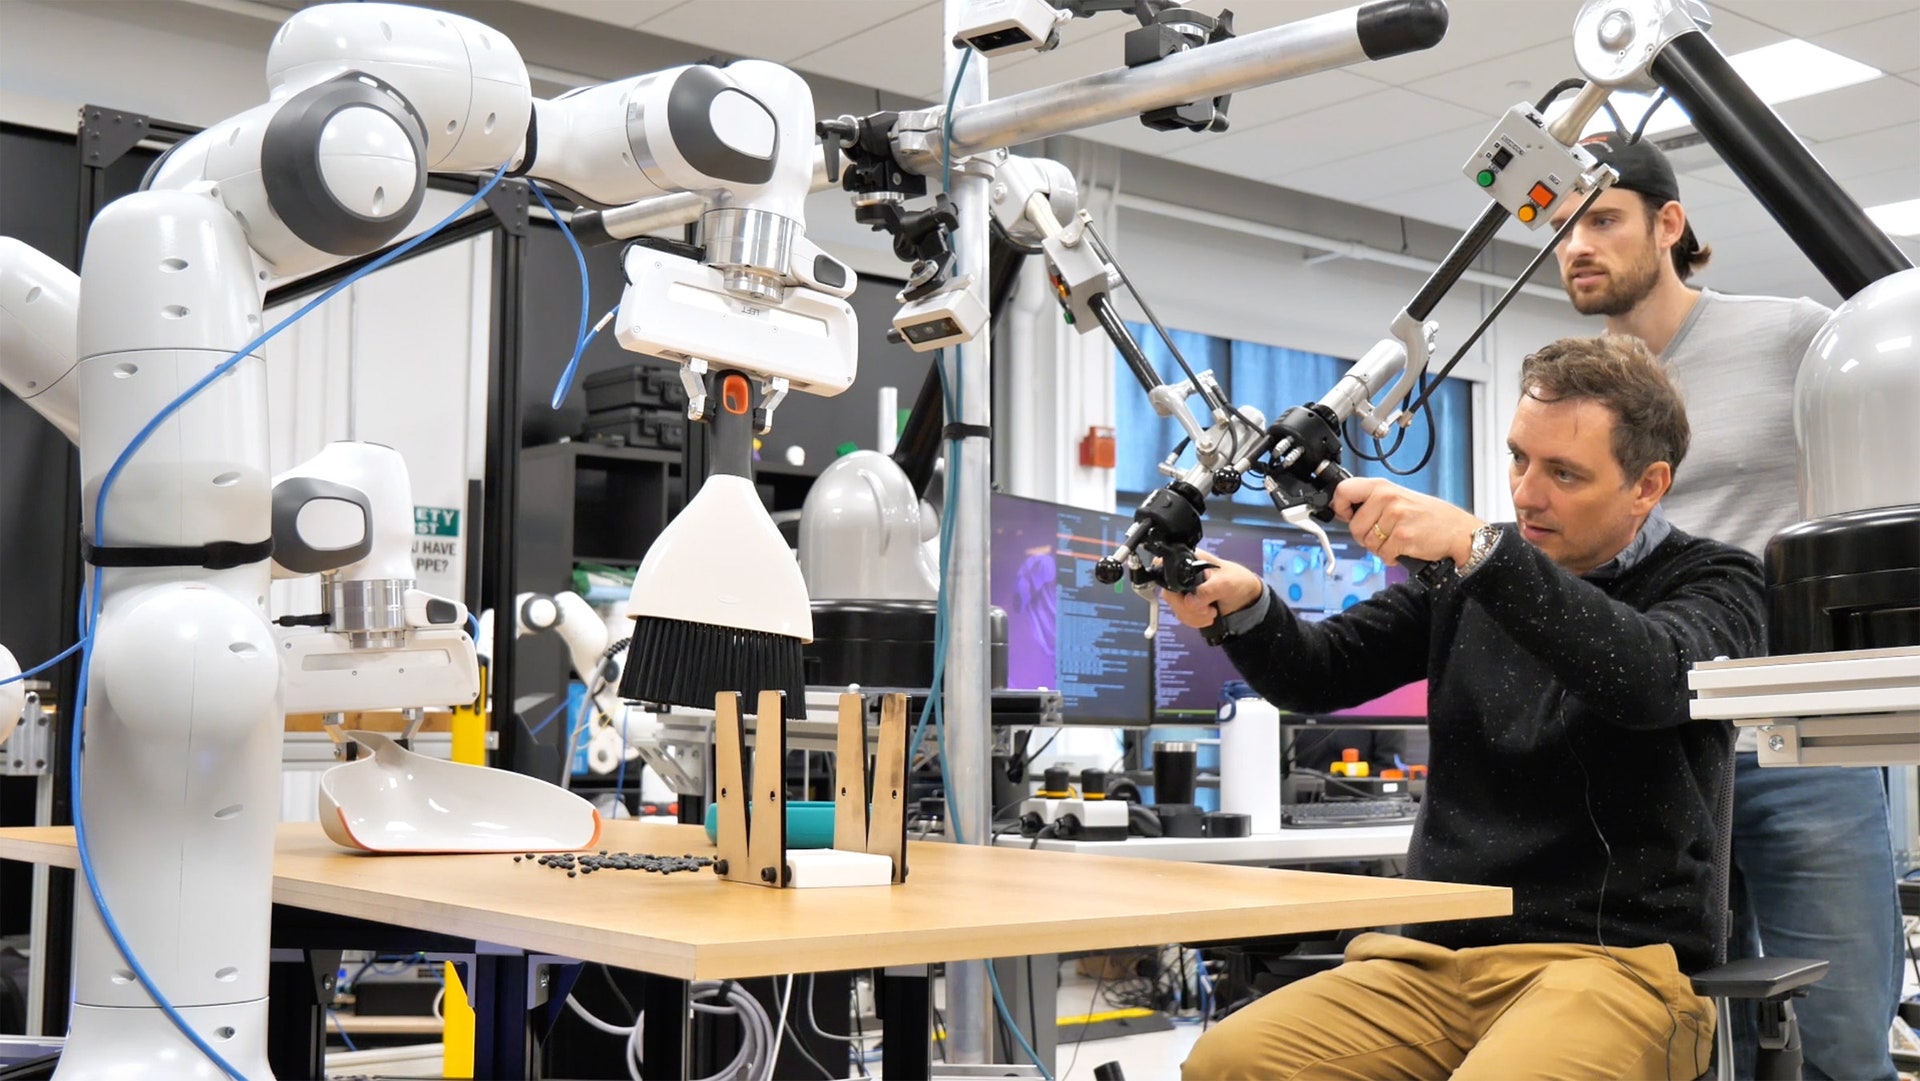 Toyota-robotar lär sig utföra sysslor genom att kopiera människors handlingar